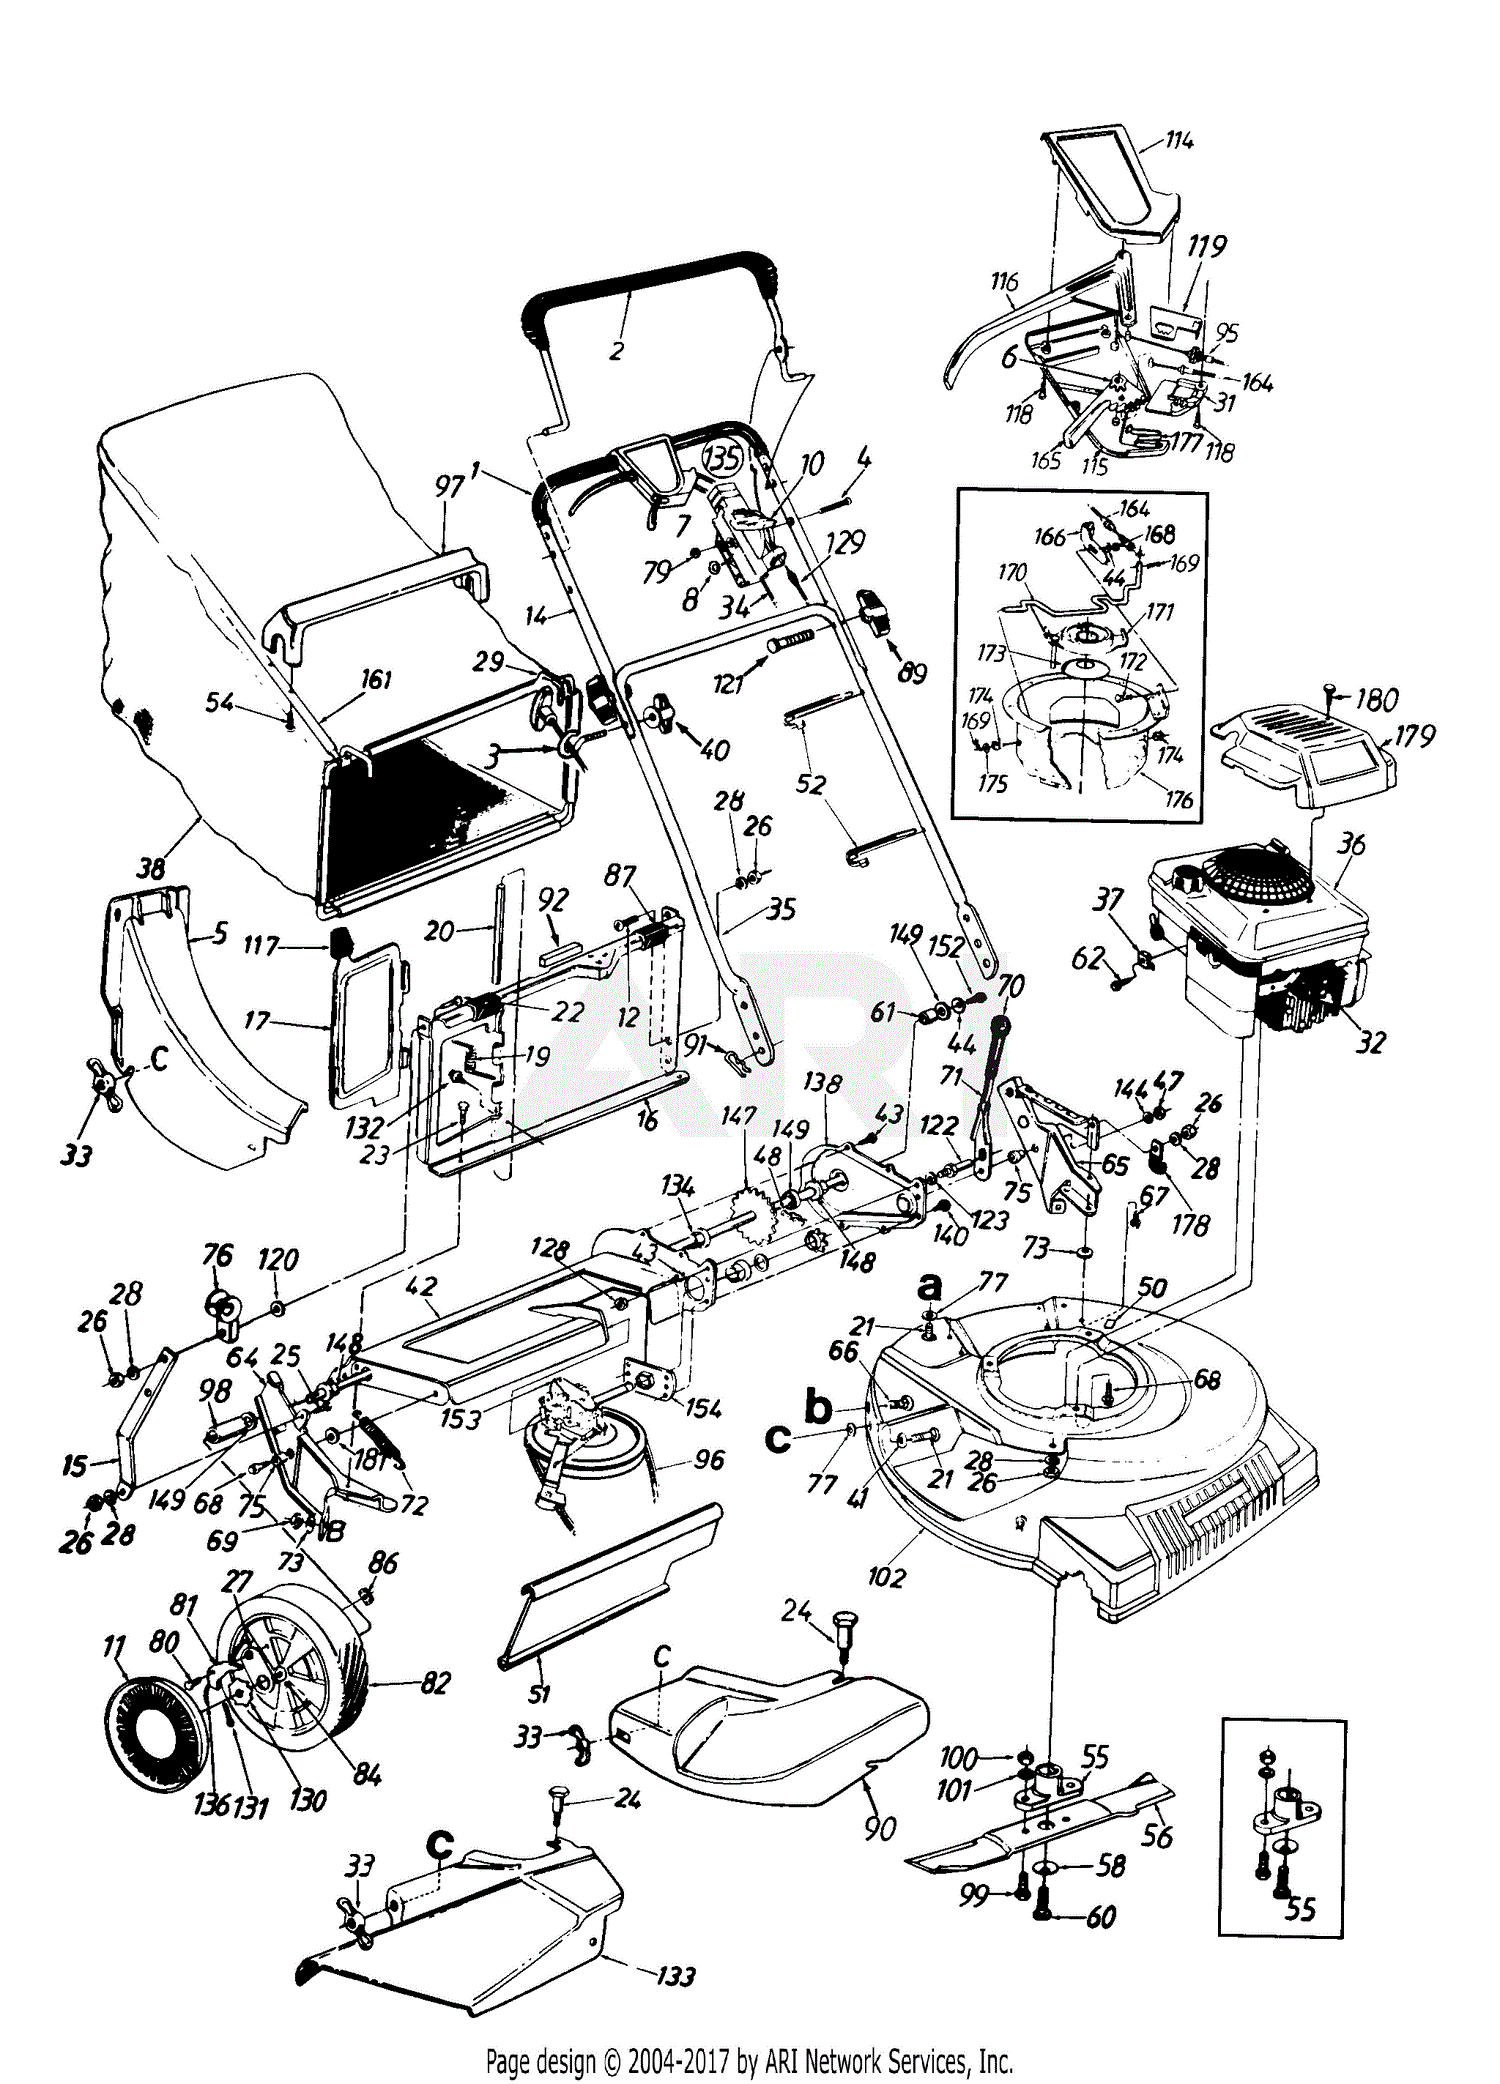 [DIAGRAM] Honda Self Propelled Lawn Mower Parts Diagram FULL Version HD